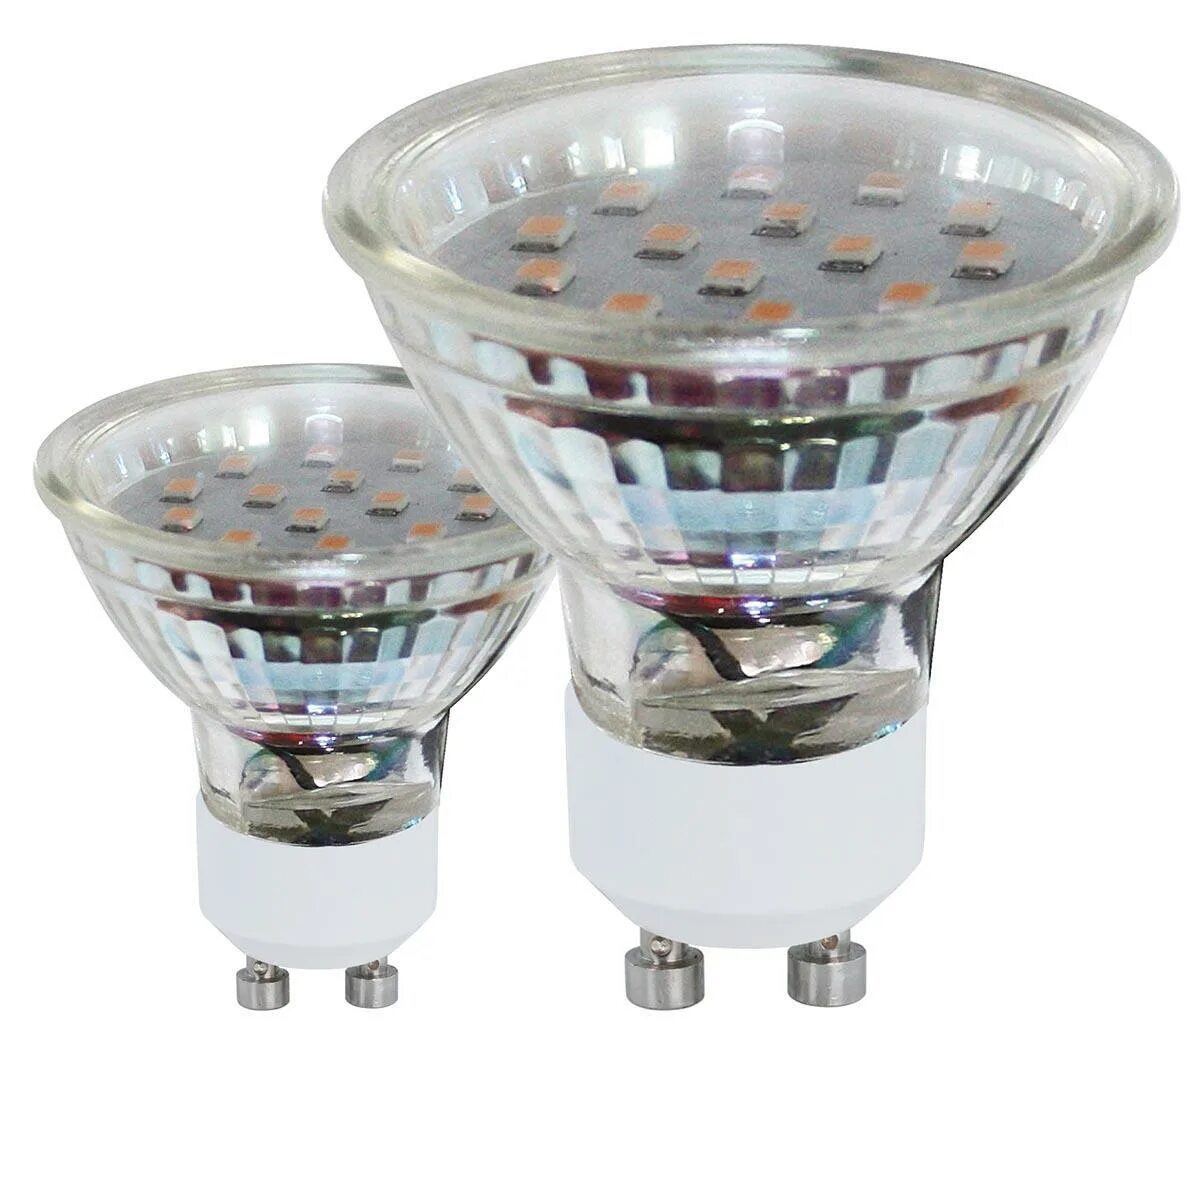 Лампочки цена купить. Лампа светодиодная прозрачная gu10 "Osram". Лампы с цоколем gu10 светодиодные. Лампа LM_led_gu10 11671. Лампа gu10 4w 3000k.